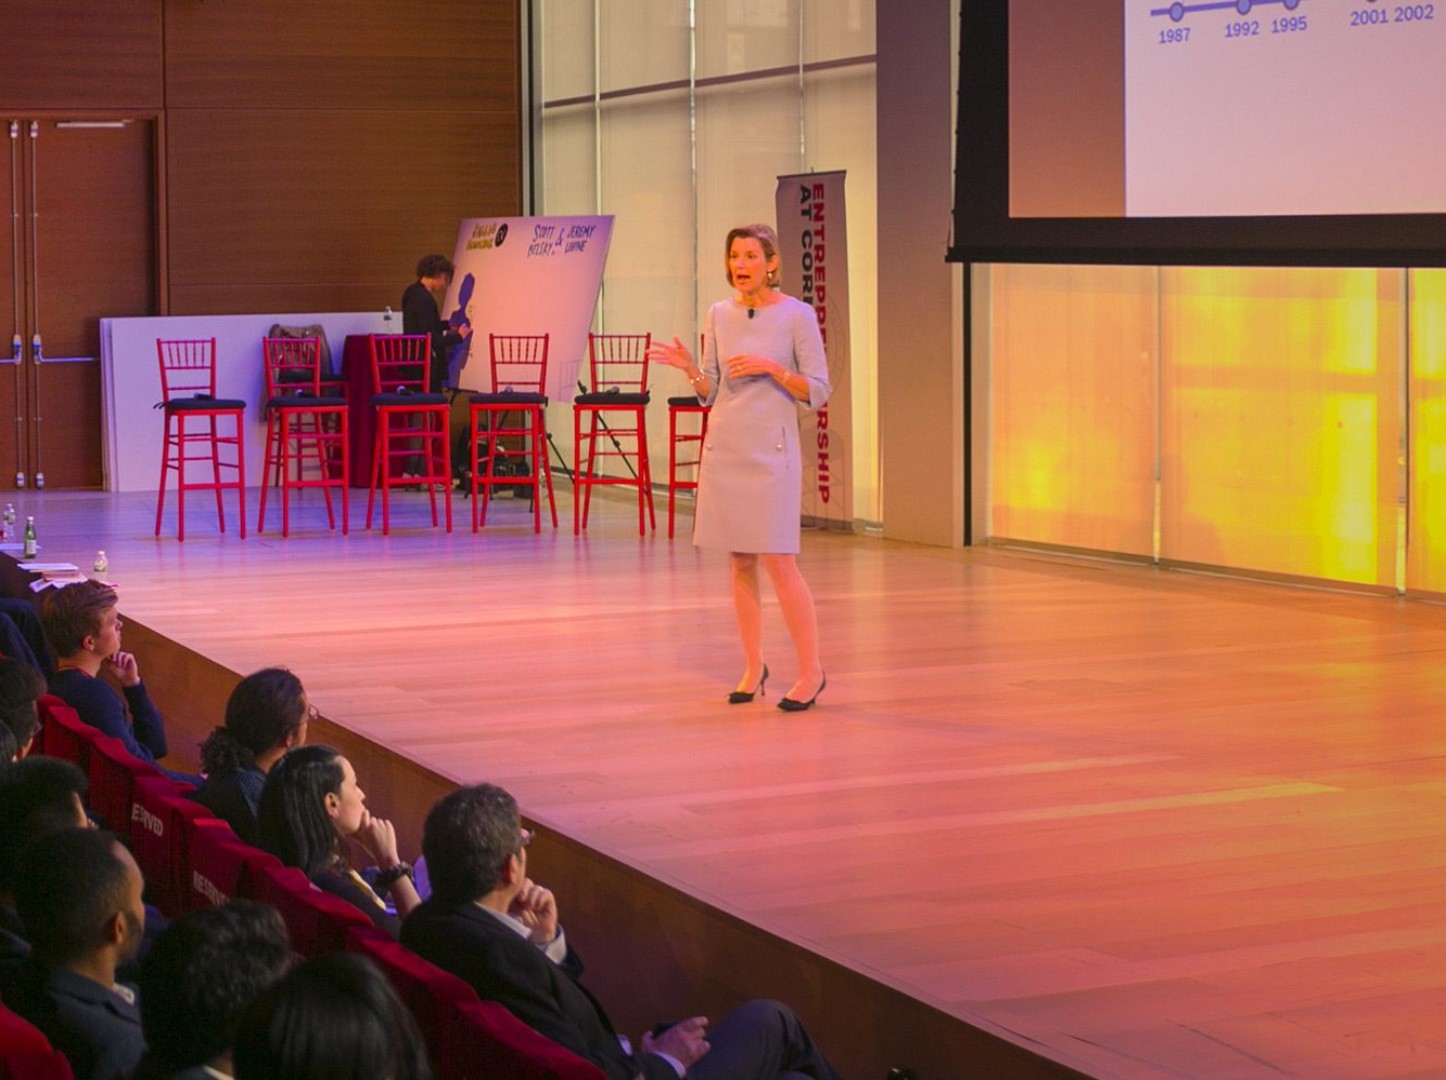 Sallie Krawcheck, CEO, Ellevest, speaks at the 2016 Cornell Entrepreneurship Summit.